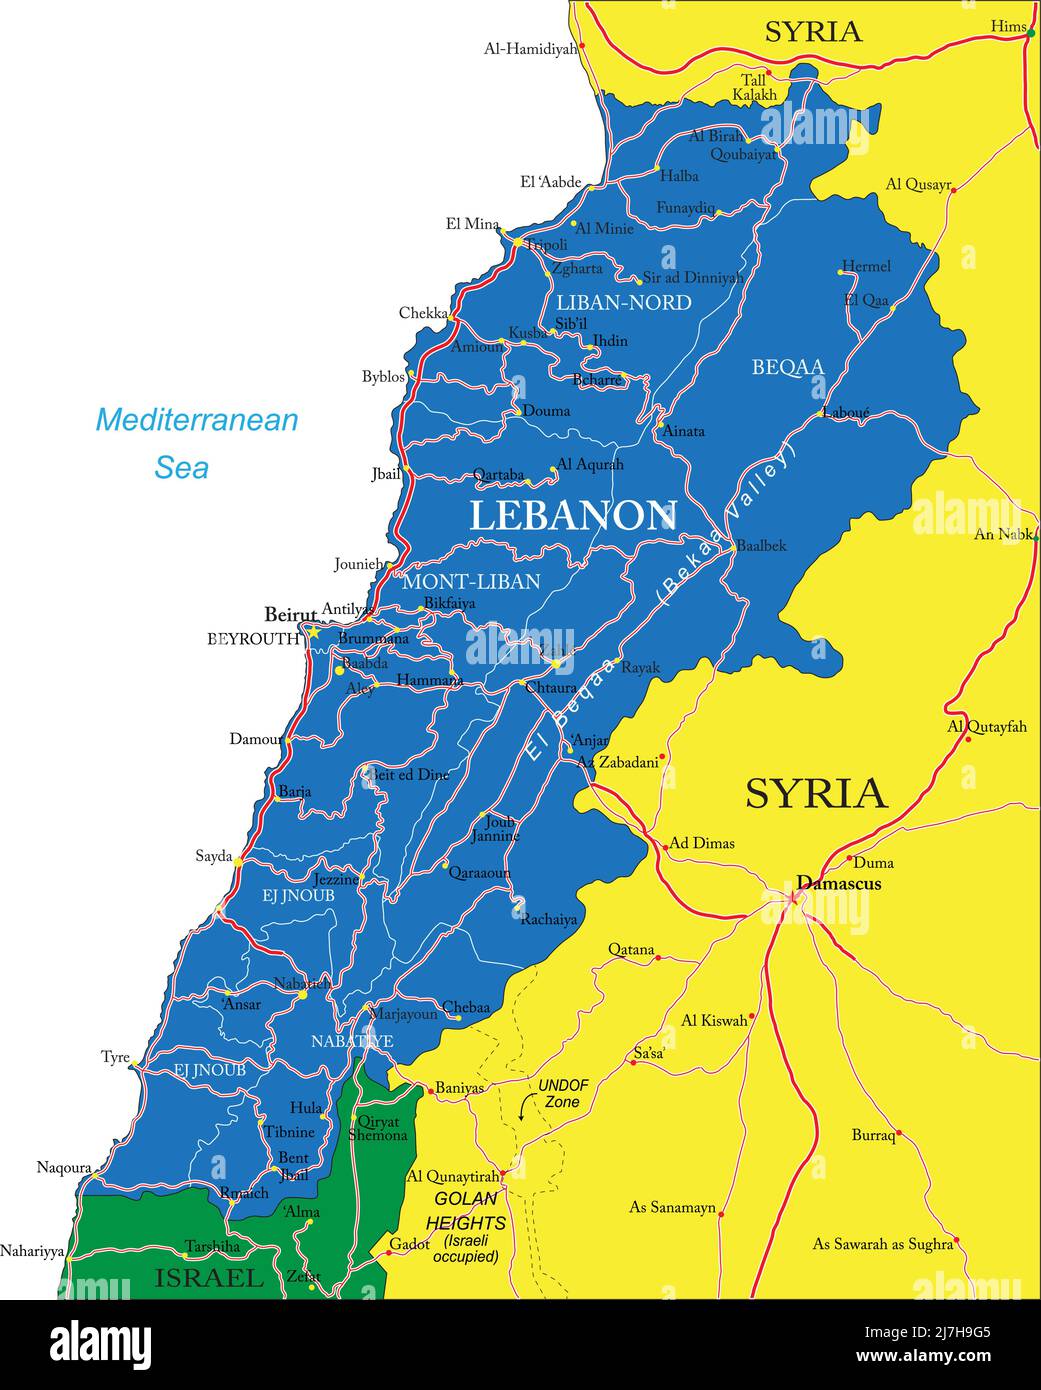 Hochdetaillierte Vektorkarte des Libanon mit Verwaltungsregionen, Hauptstädten und Straßen. Stock Vektor